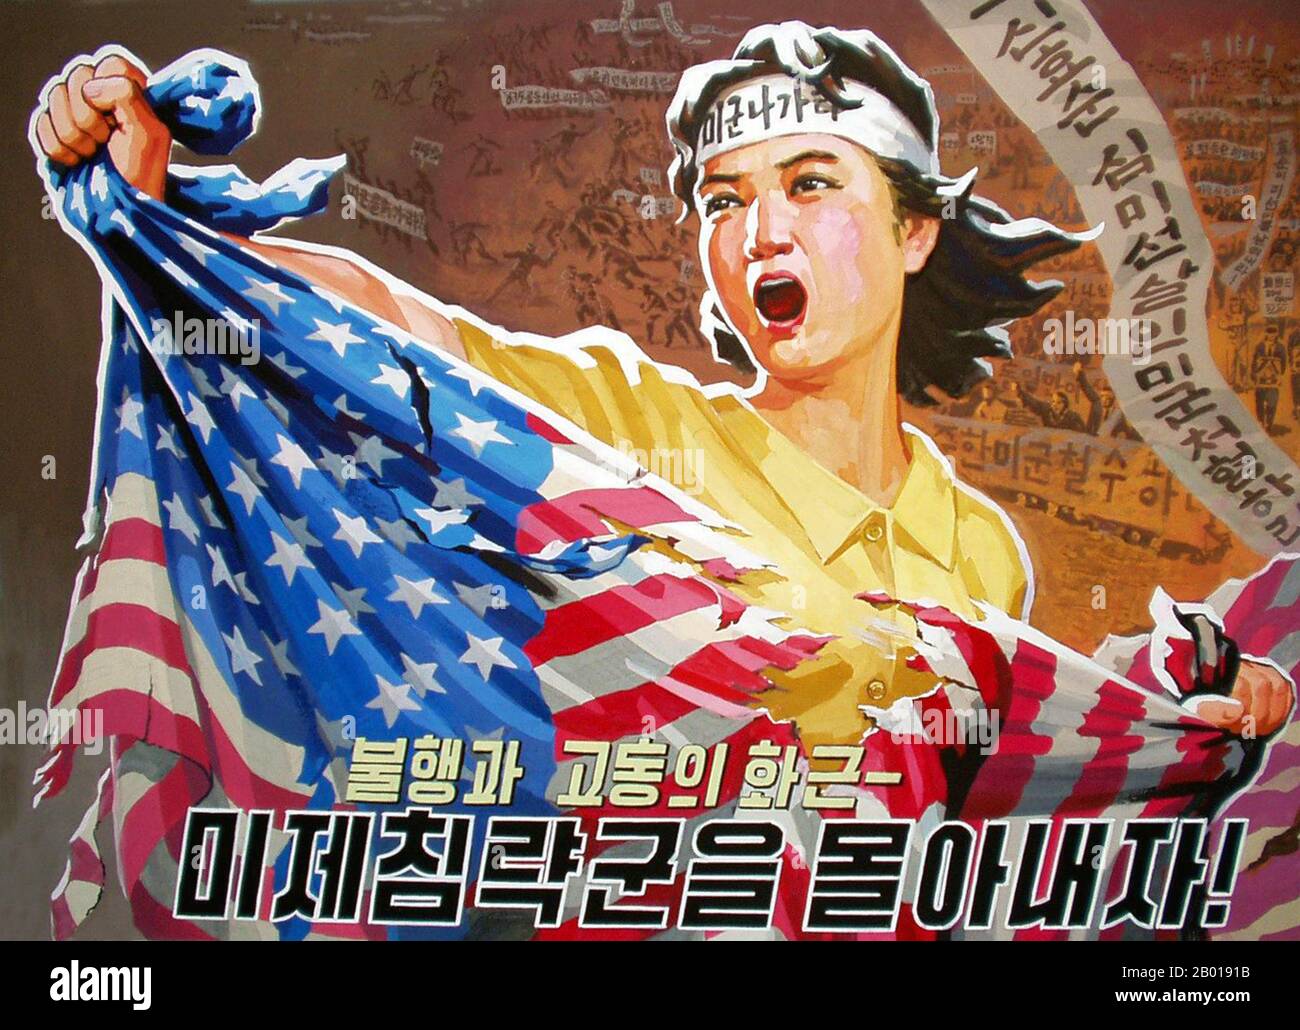 Korea: Nordkoreanisches (DVRK) Propagandaplakat - 'zerreißt die amerikanische Flagge', c. 1950s. Sozialistischer Realismus ist ein Stil realistischer Kunst, der sich unter dem Sozialismus in der Sowjetunion entwickelte und in anderen kommunistischen Ländern zu einem dominanten Stil wurde. Der sozialistische Realismus ist ein teleologisch orientierter Stil, der die Förderung der Ziele des Sozialismus und Kommunismus zum Ziel hat. Obwohl verwandt, sollte sie nicht mit dem sozialen Realismus verwechselt werden, einer Art Kunst, die Themen sozialer Belang realistisch darstellt. Der sozialistische Realismus verherrlicht im Allgemeinen die Ideologie des kommunistischen Staates. Stockfoto